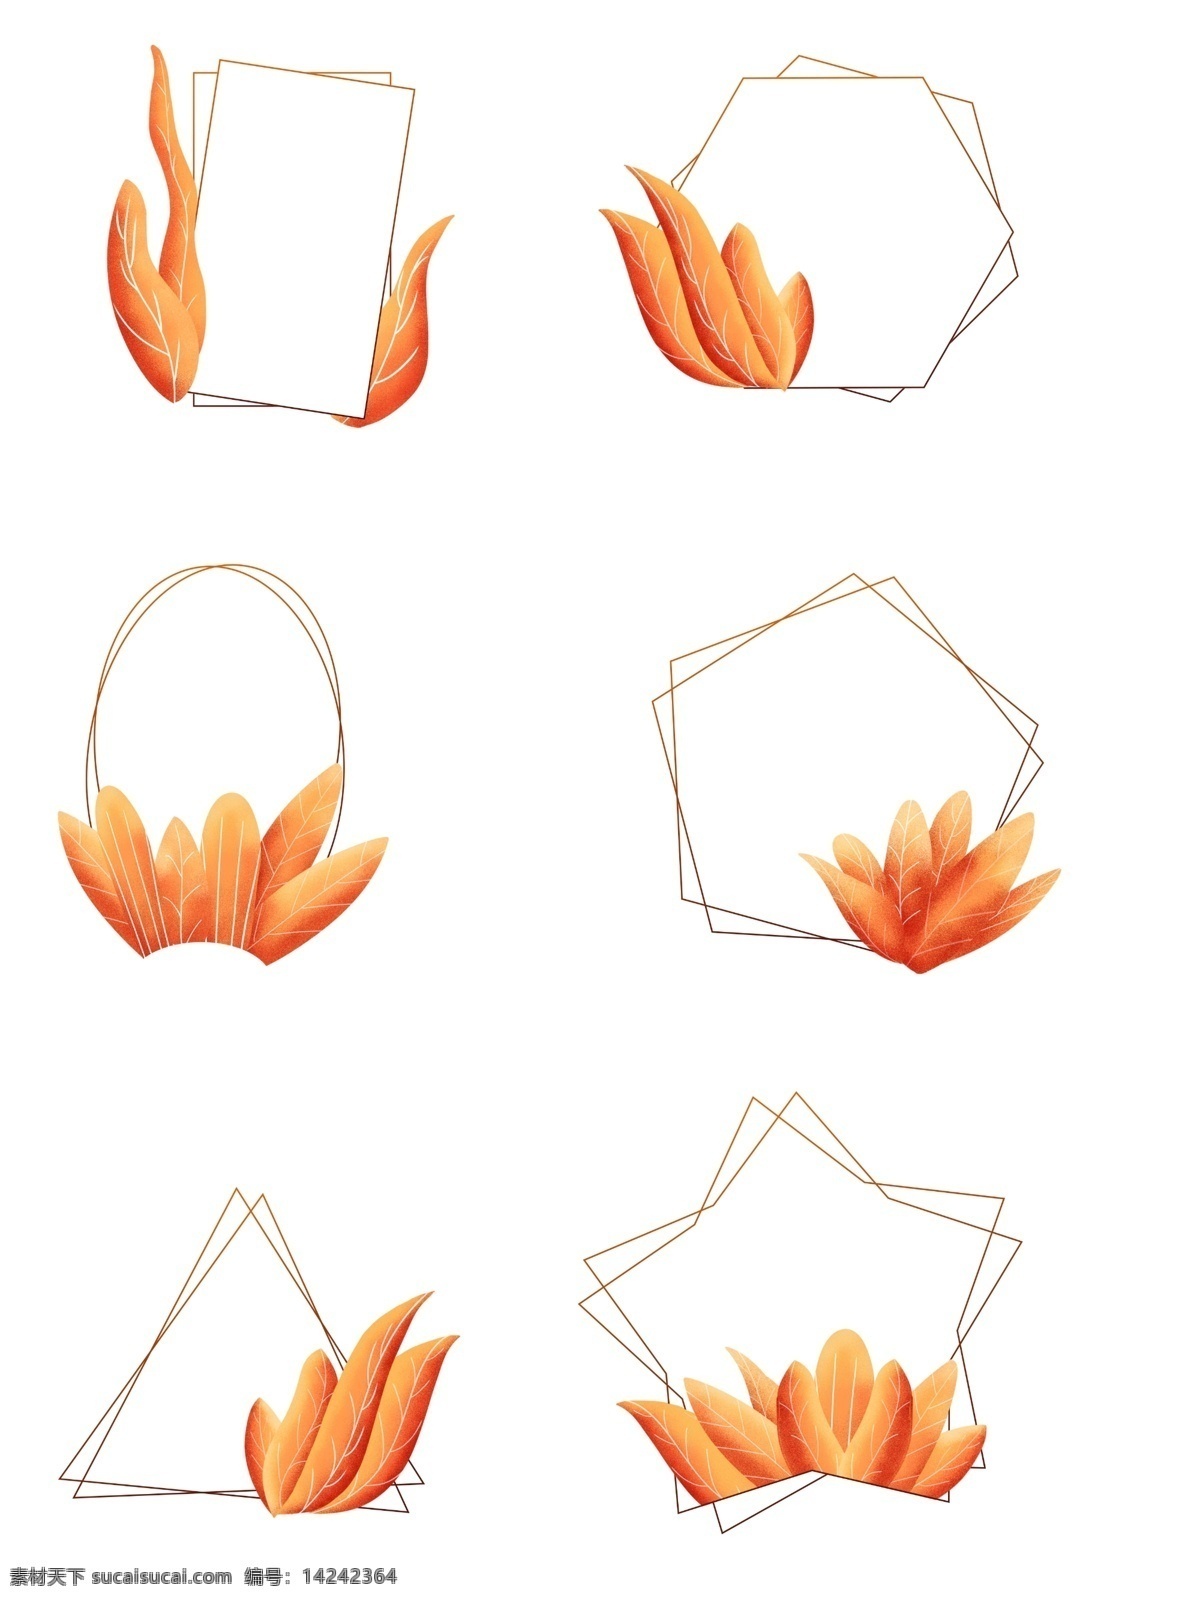 手绘 珊瑚 橘 配色 植物 叶子 边框 元素 手绘植物 手绘边框 植物叶子 珊瑚橘边框 珊瑚橘叶子